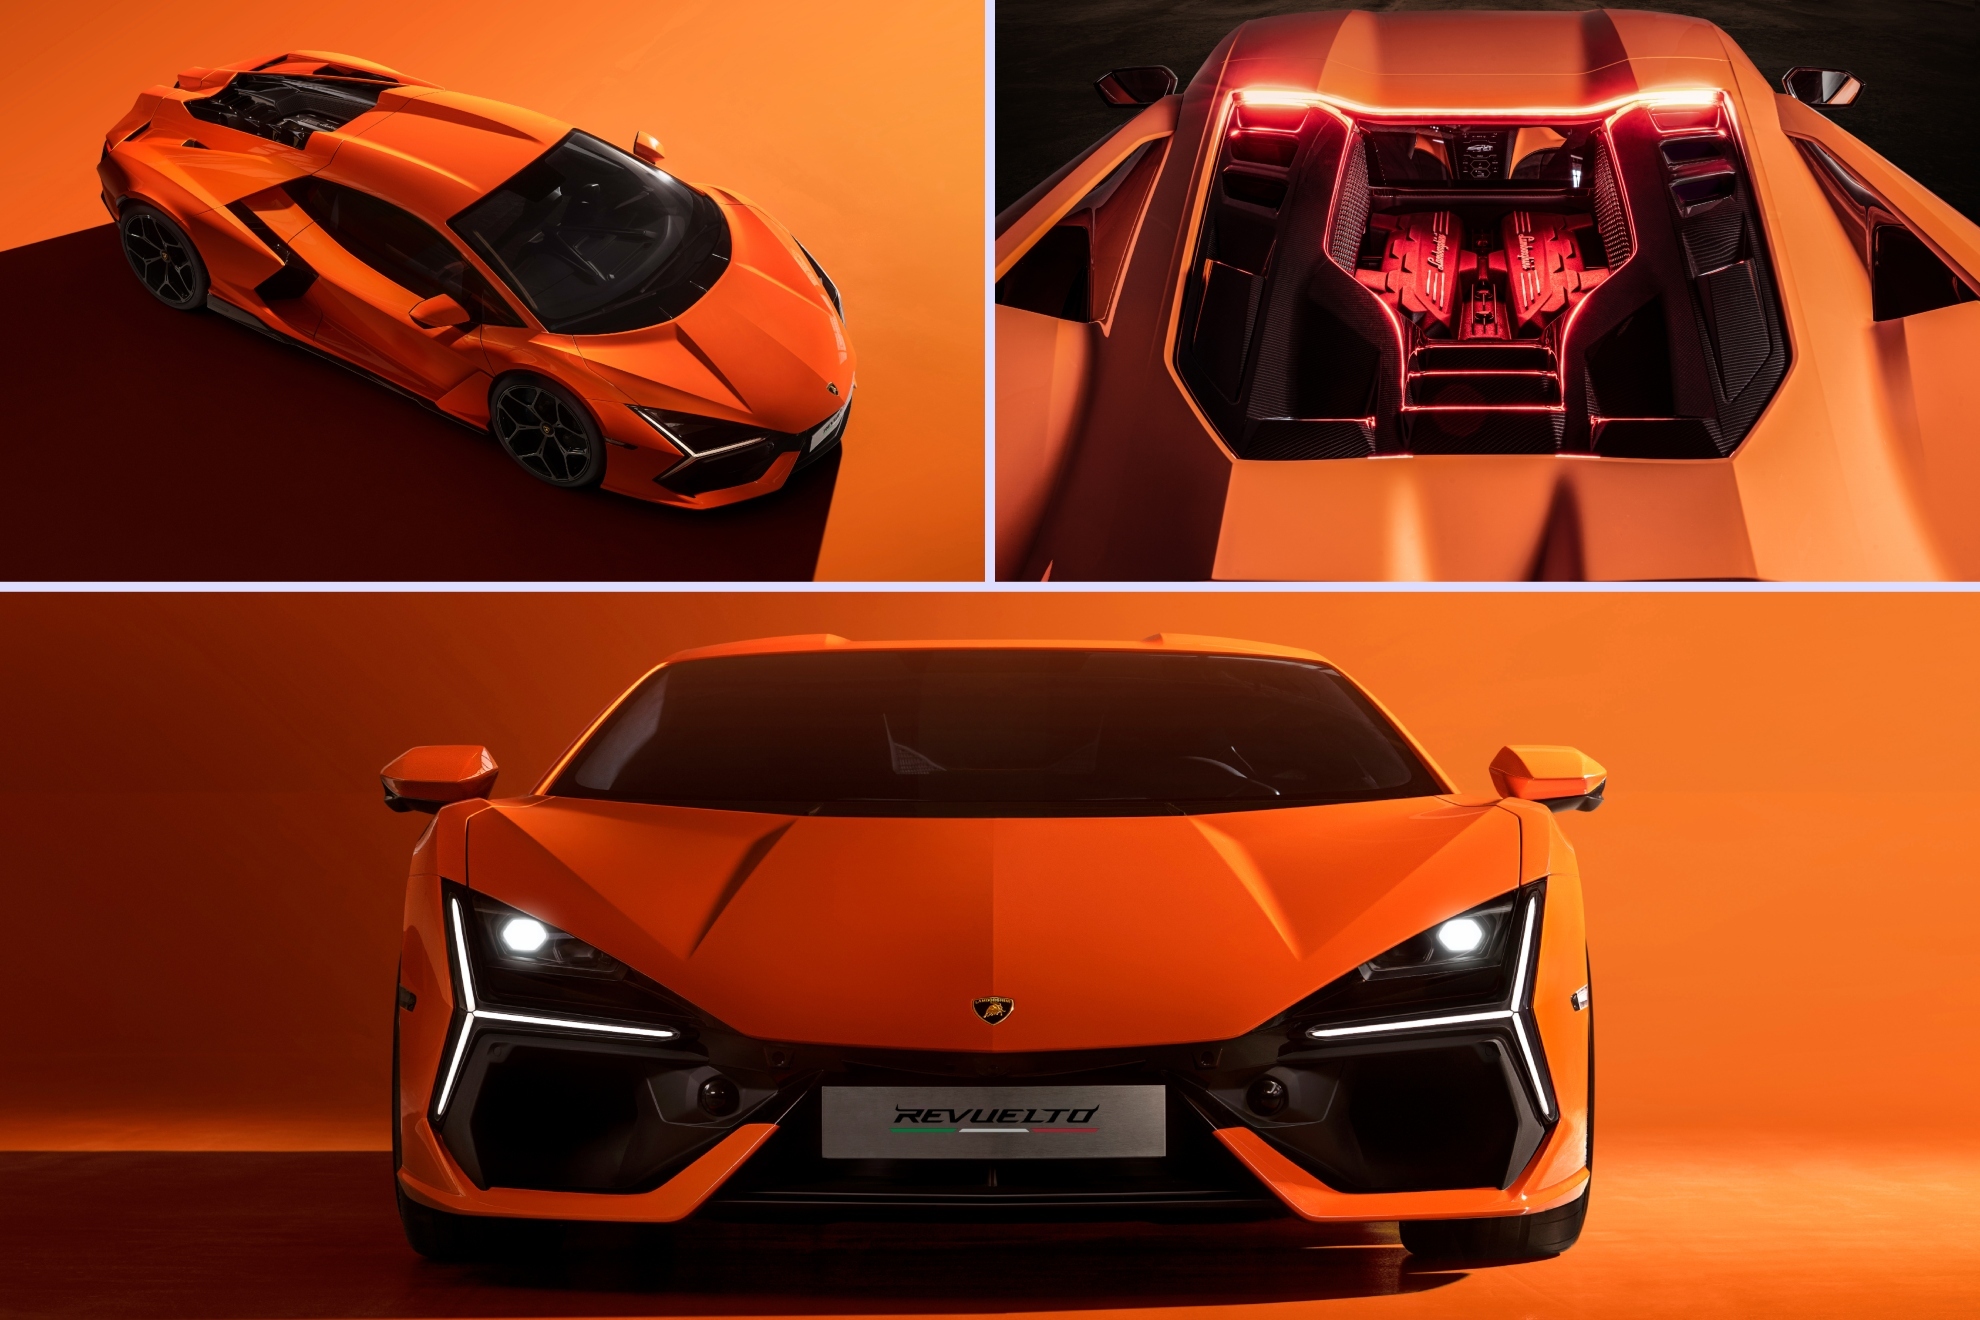 El Revuelto, que también tiene nombre de toro bravo, es el modelo que ocupa el hueco del Aventador como el deportivo bandera de Lamborghini.